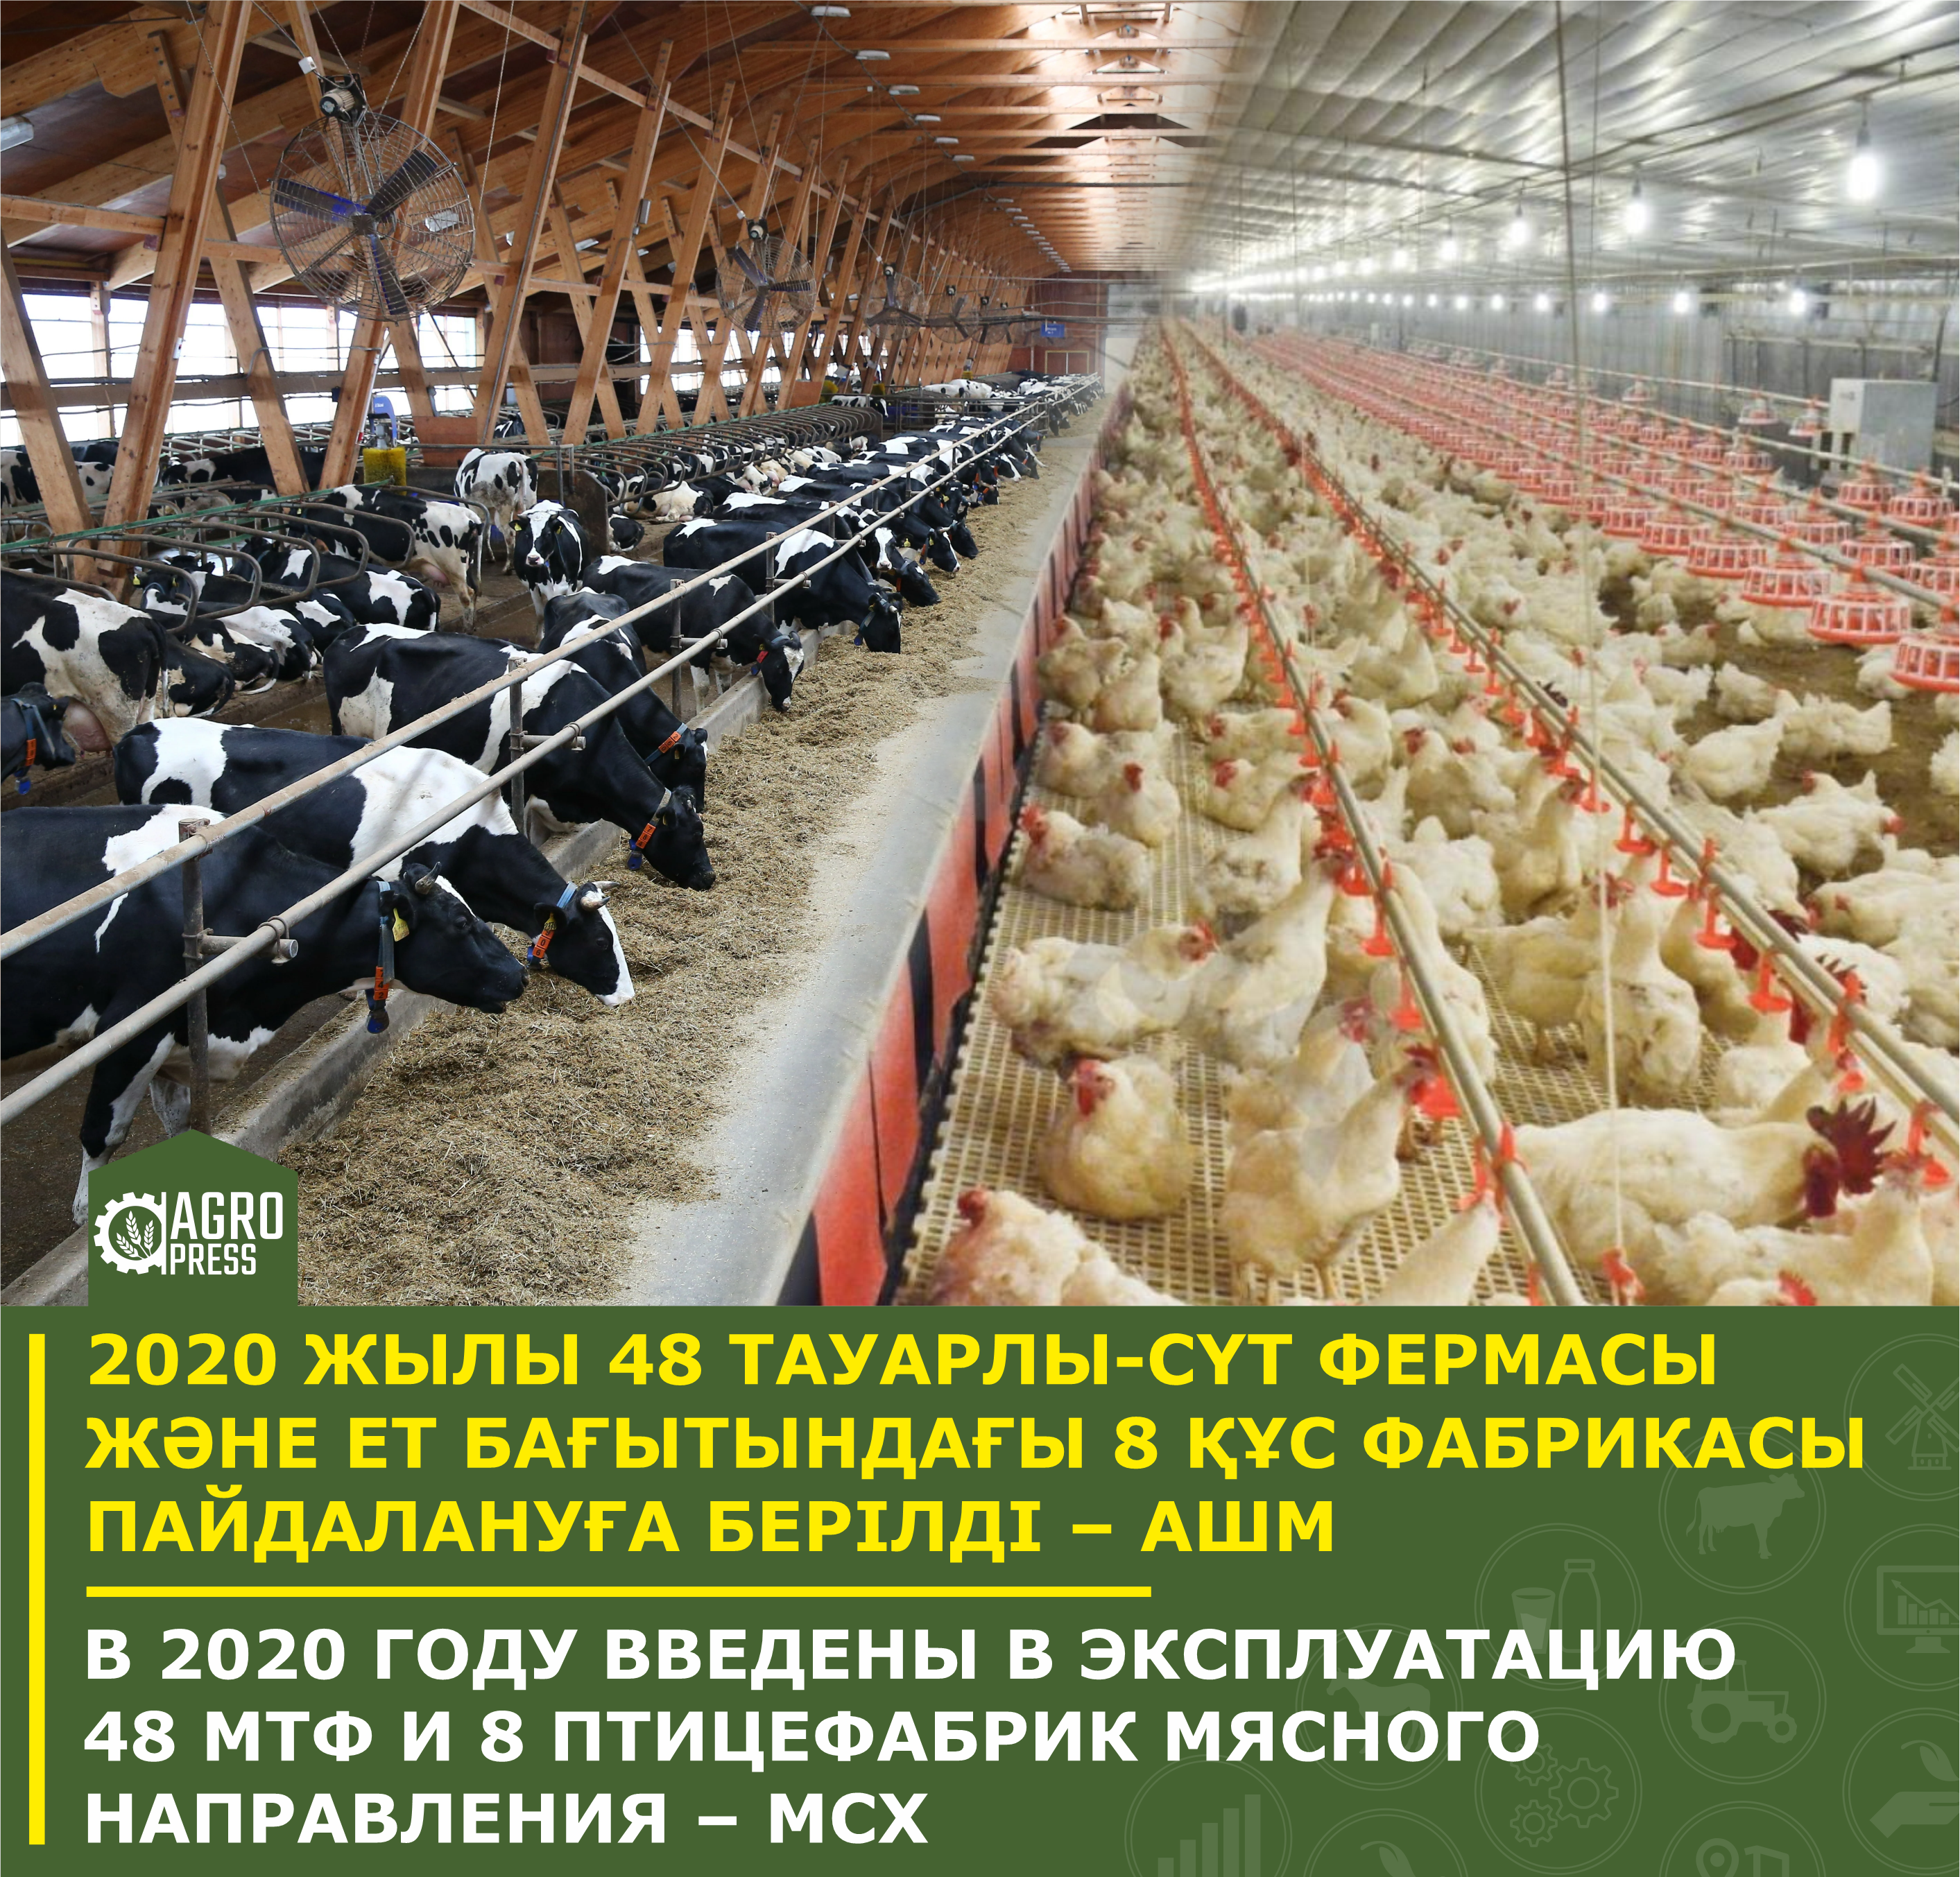 В 2020 году введены в эксплуатацию 48 МТФ и 8 птицефабрик мясного направления – МСХ